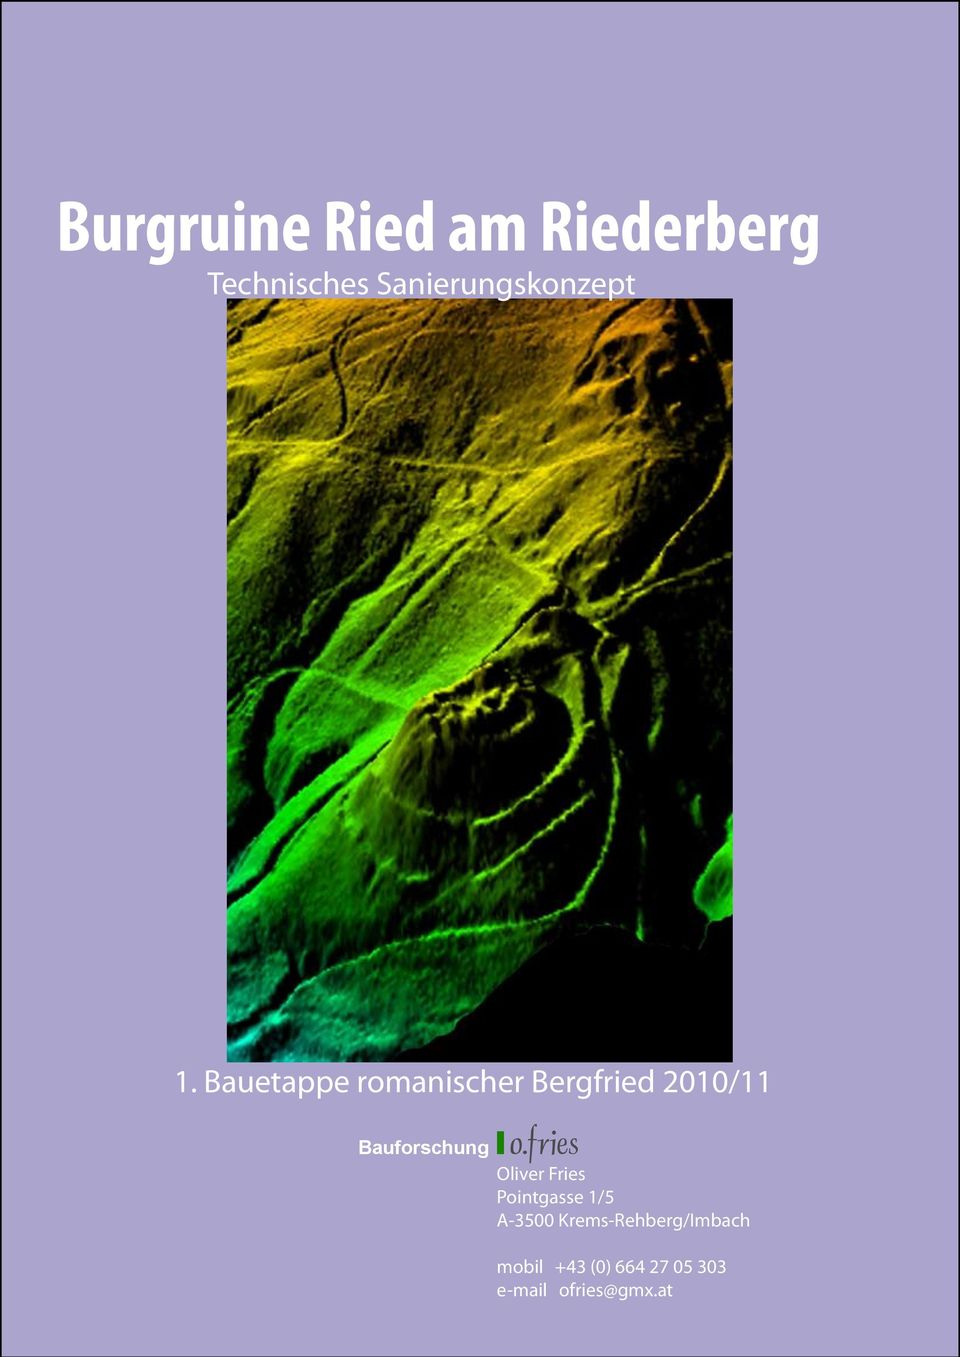 Bauetappe romanischer Bergfried 2010/11 Bauforschung I o.